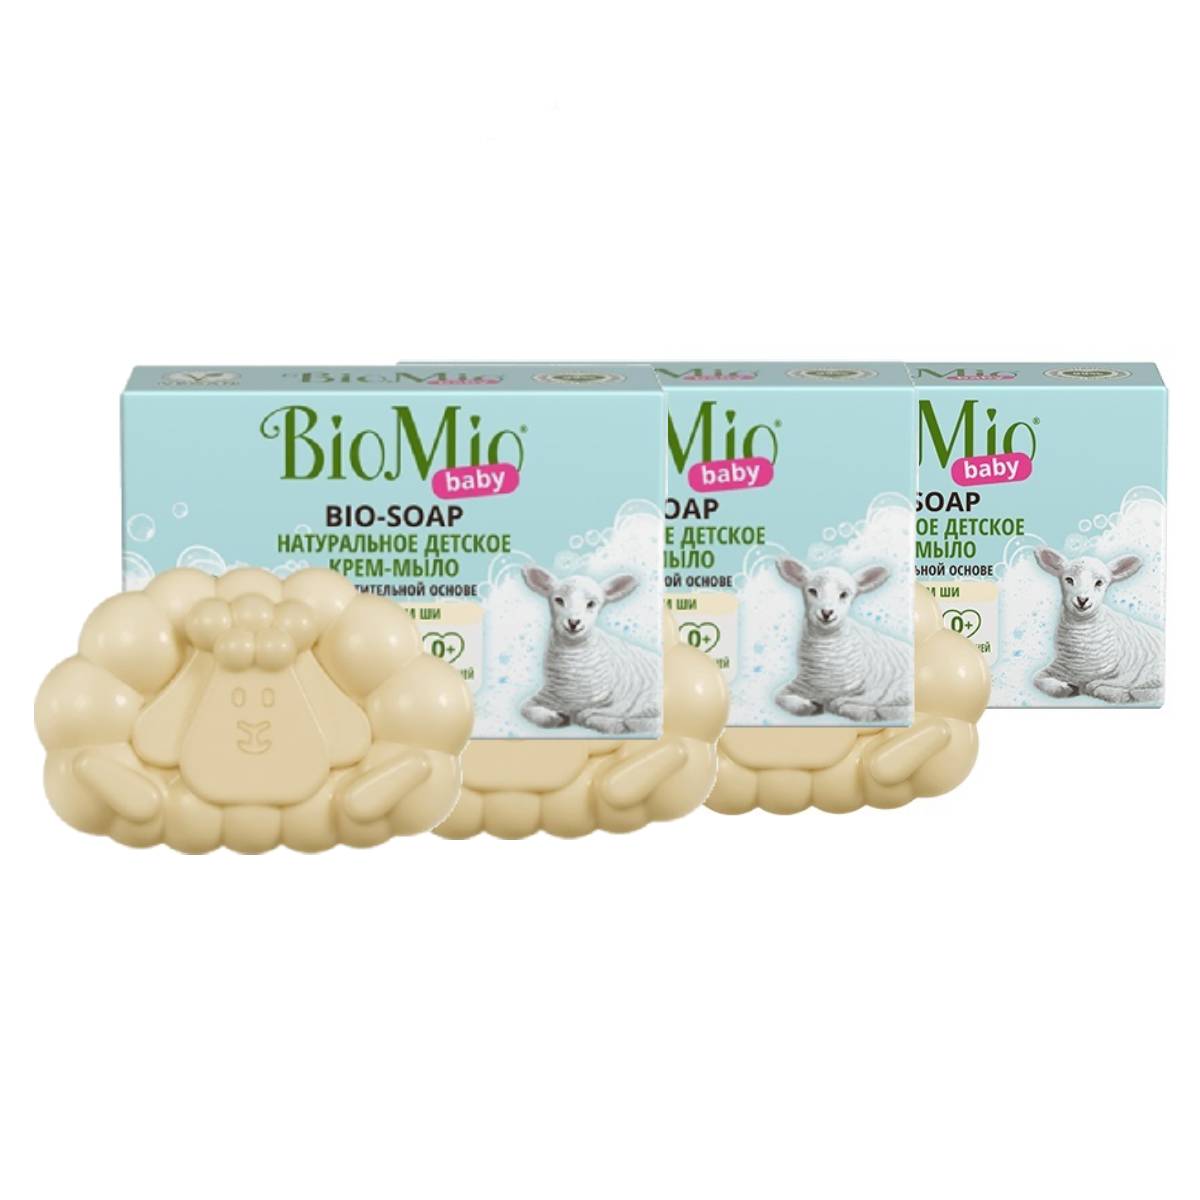 BioMio Натуральное детское крем-мыло с маслом ши, 3 х 90 г (BioMio, Мыло) bubchen мыло детское 125 г